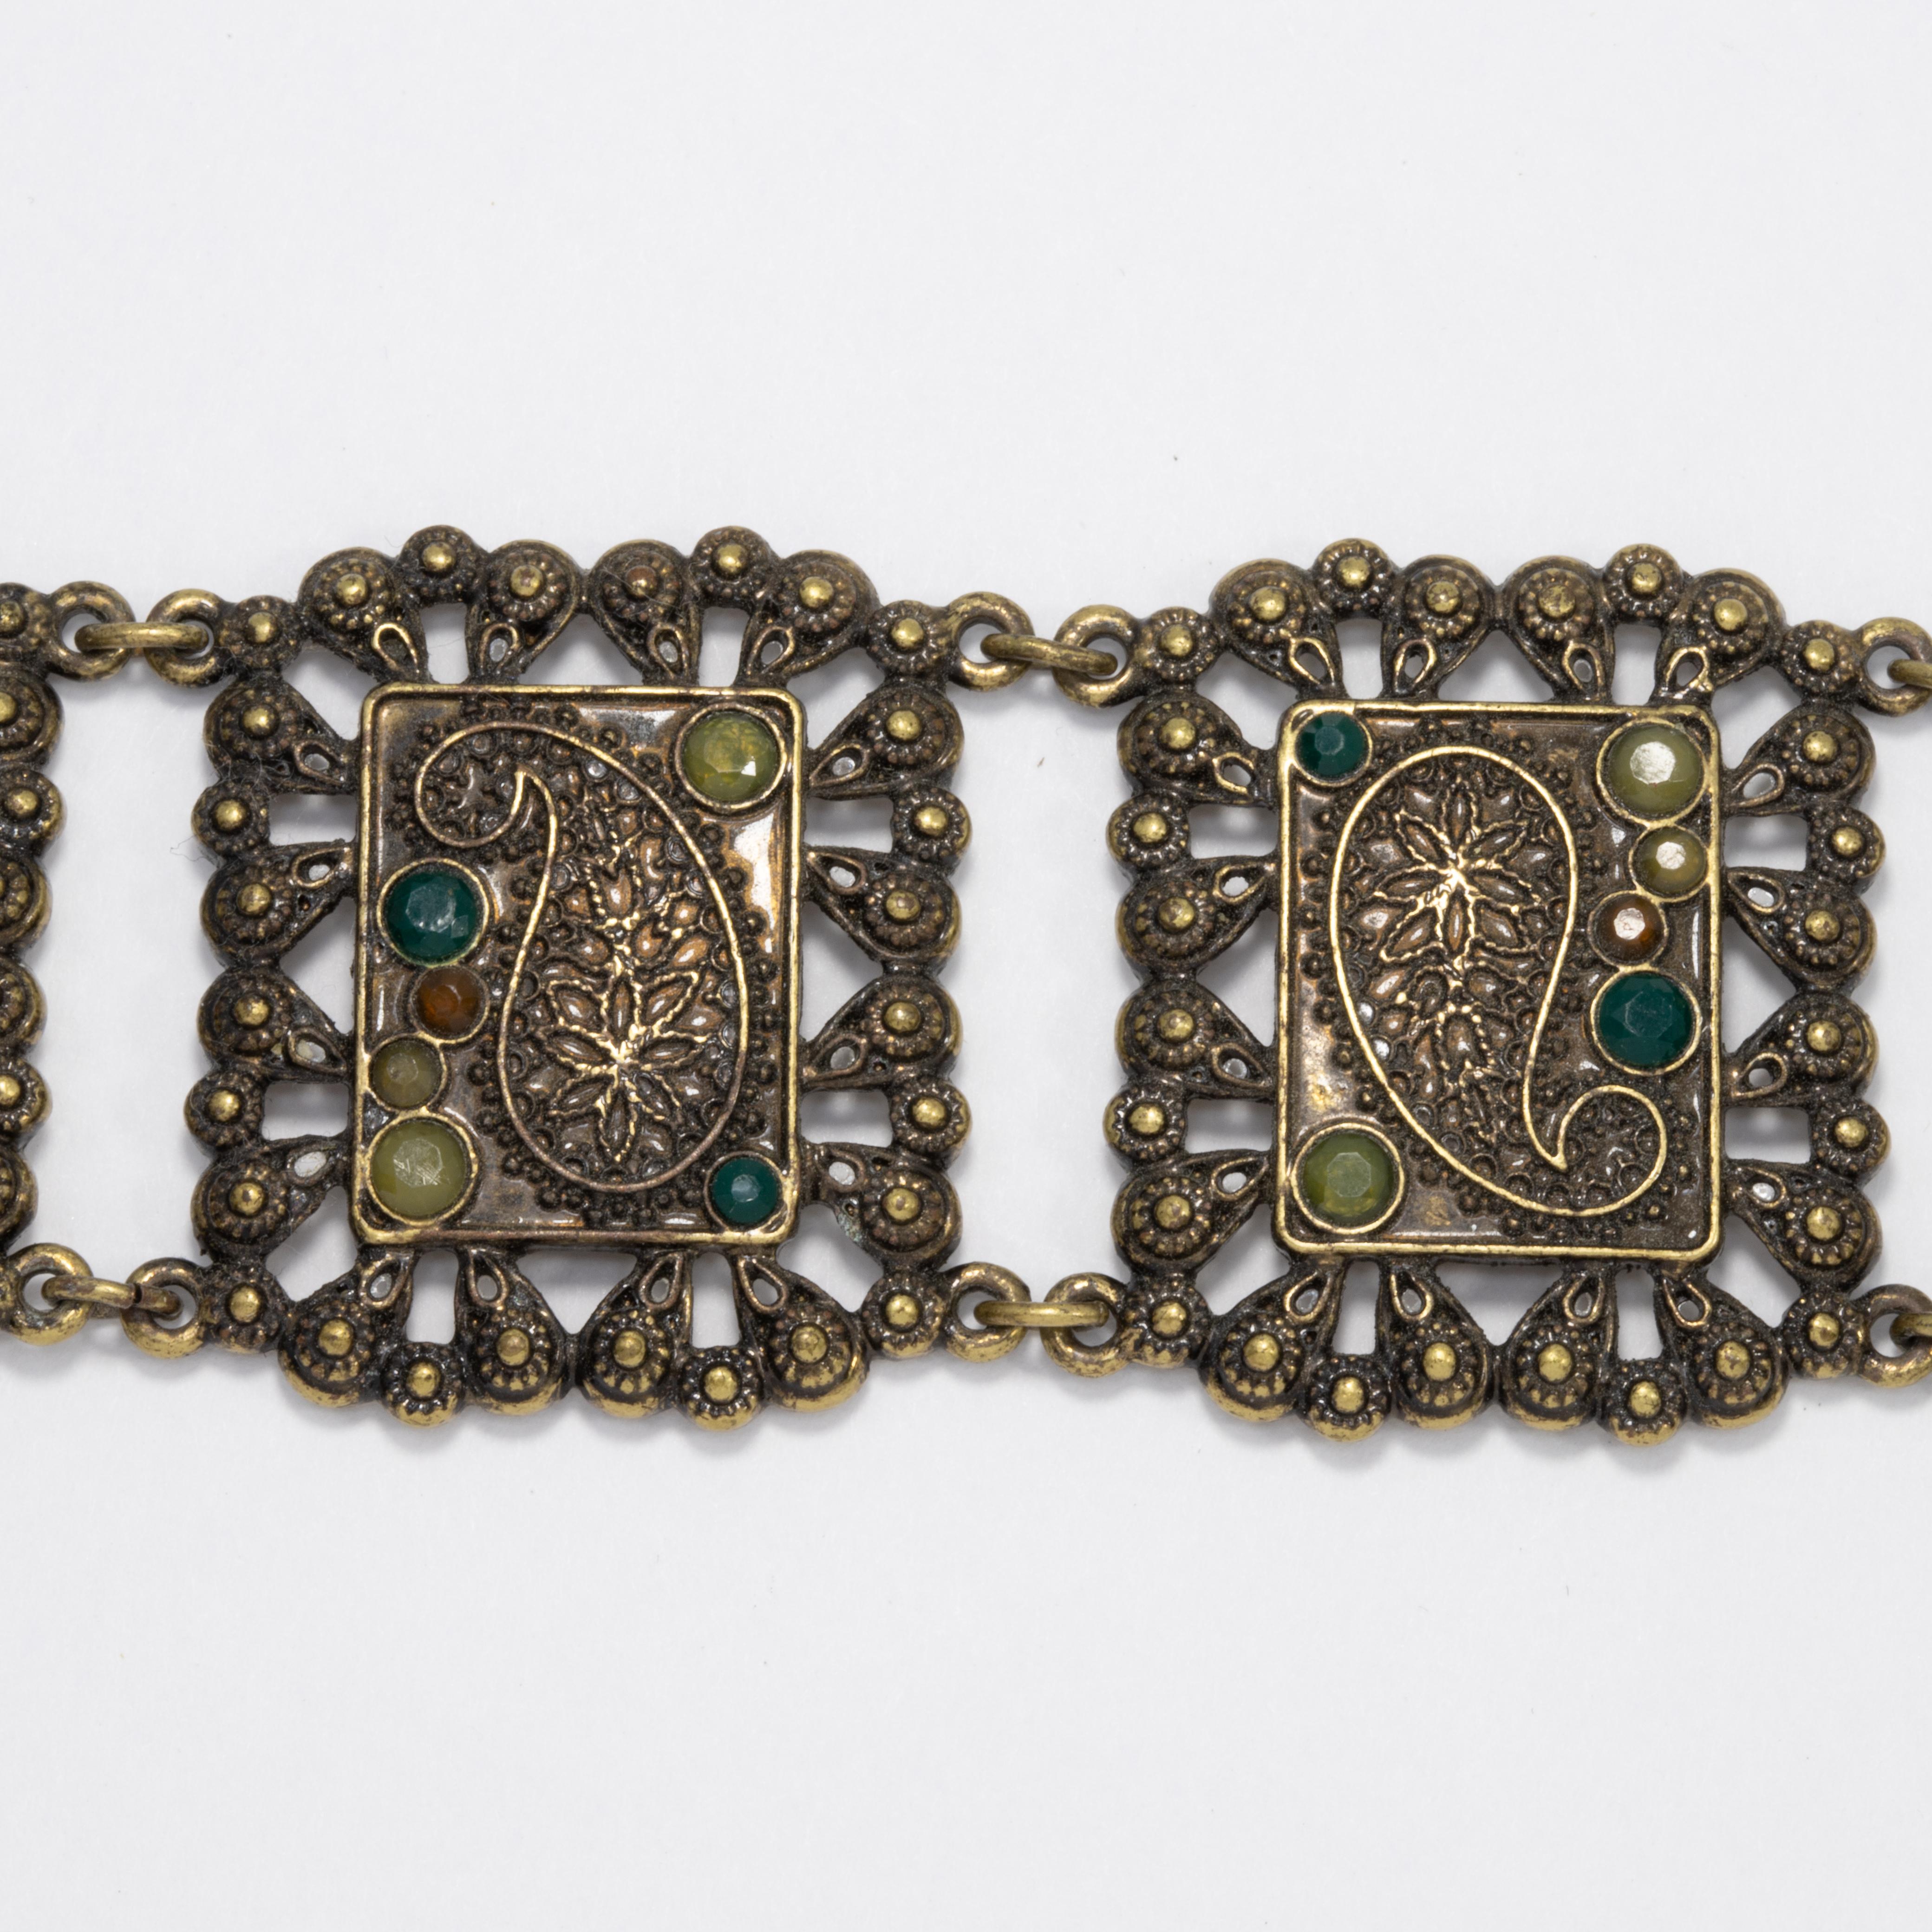 Ein exquisites Vintage-Armband mit dekorativen Gliedern mit Paisley-Motiven, die mit Olivin- und Smaragdkristallen verziert sind.

Messing-Ton. Verschluss mit Knebelschließe.